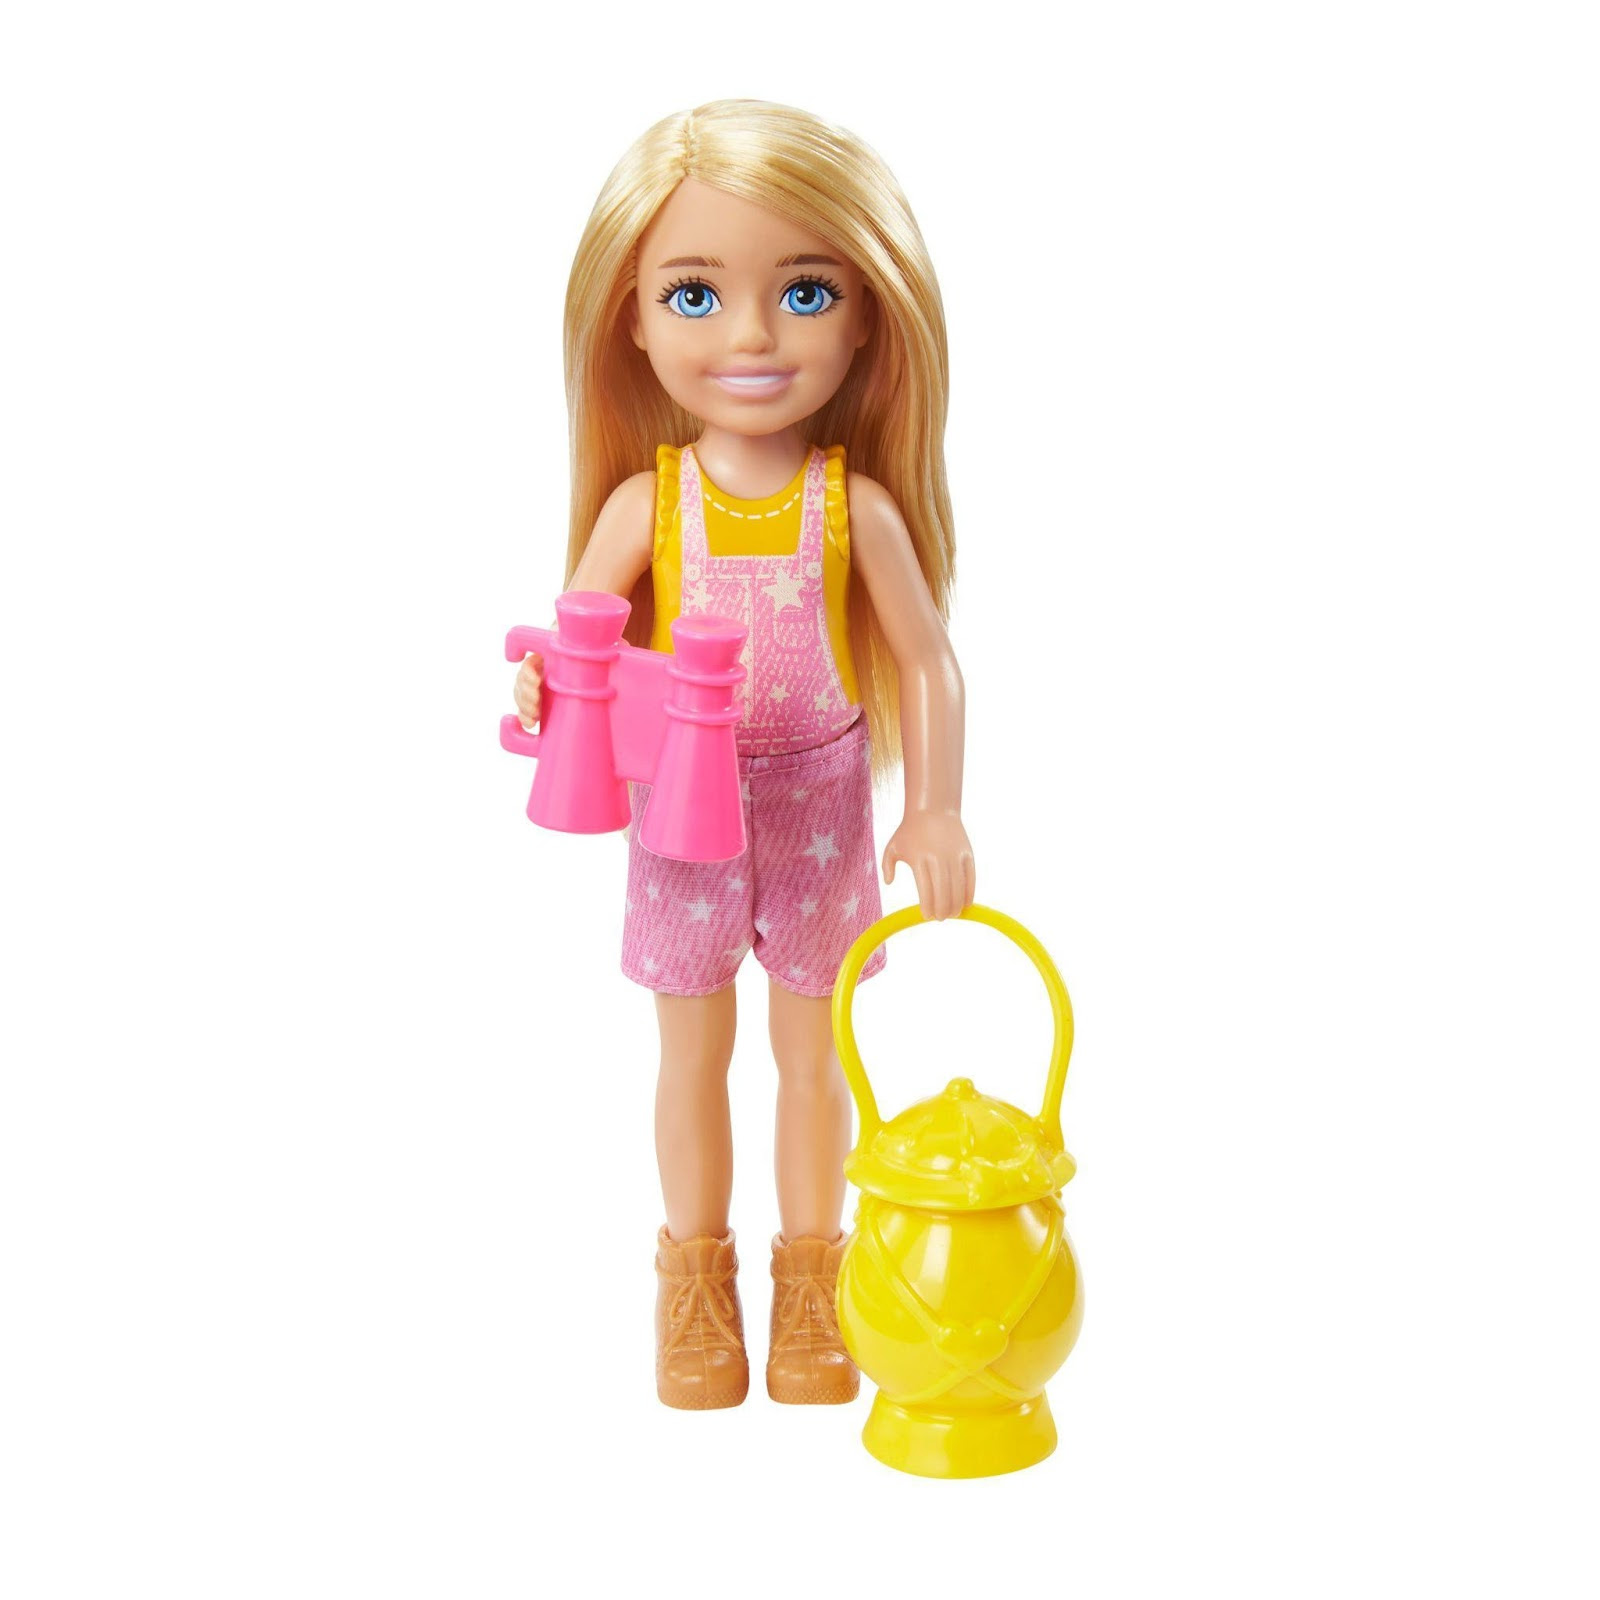 Barbie: Você Pode Ser Tudo o Que Quiser estreará no SBT - EP GRUPO   Conteúdo - Mentoria - Eventos - Marcas e Personagens - Brinquedo e Papelaria